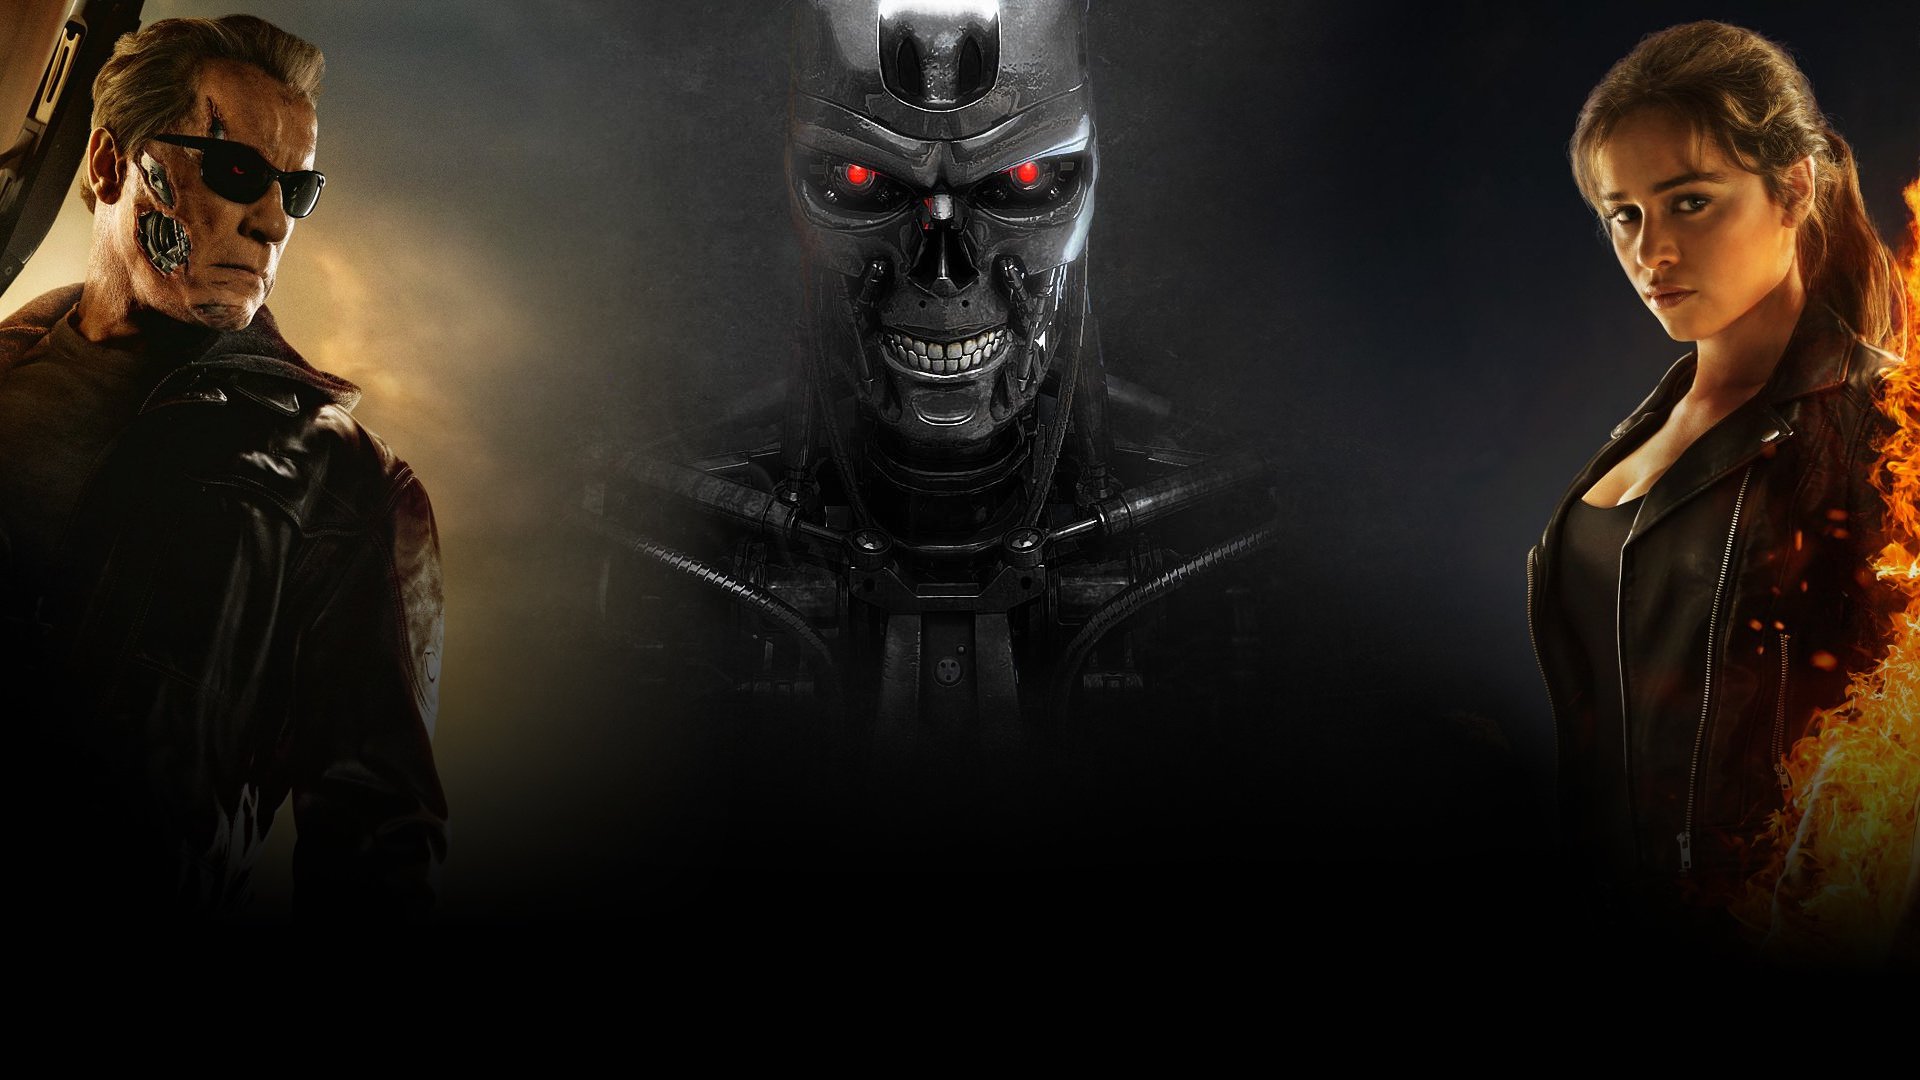 Descarga gratuita de fondo de pantalla para móvil de Películas, Terminator Génesis.